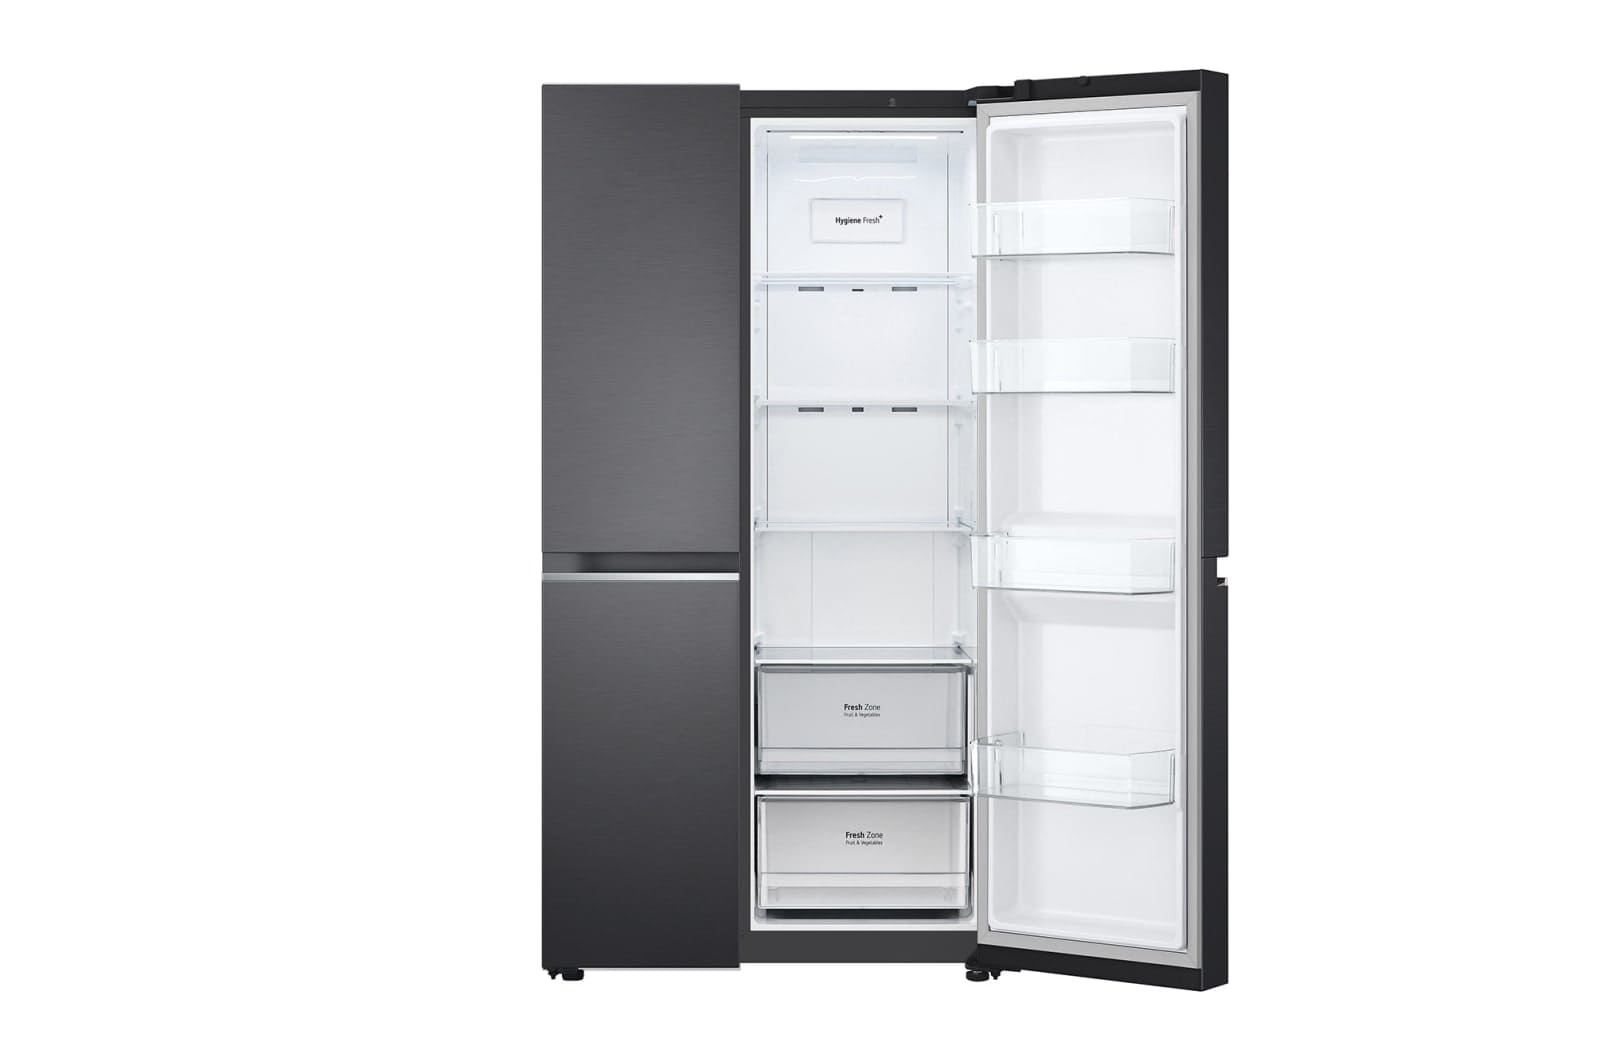 LG-694L-Side-by-side-fridge-8.jpg